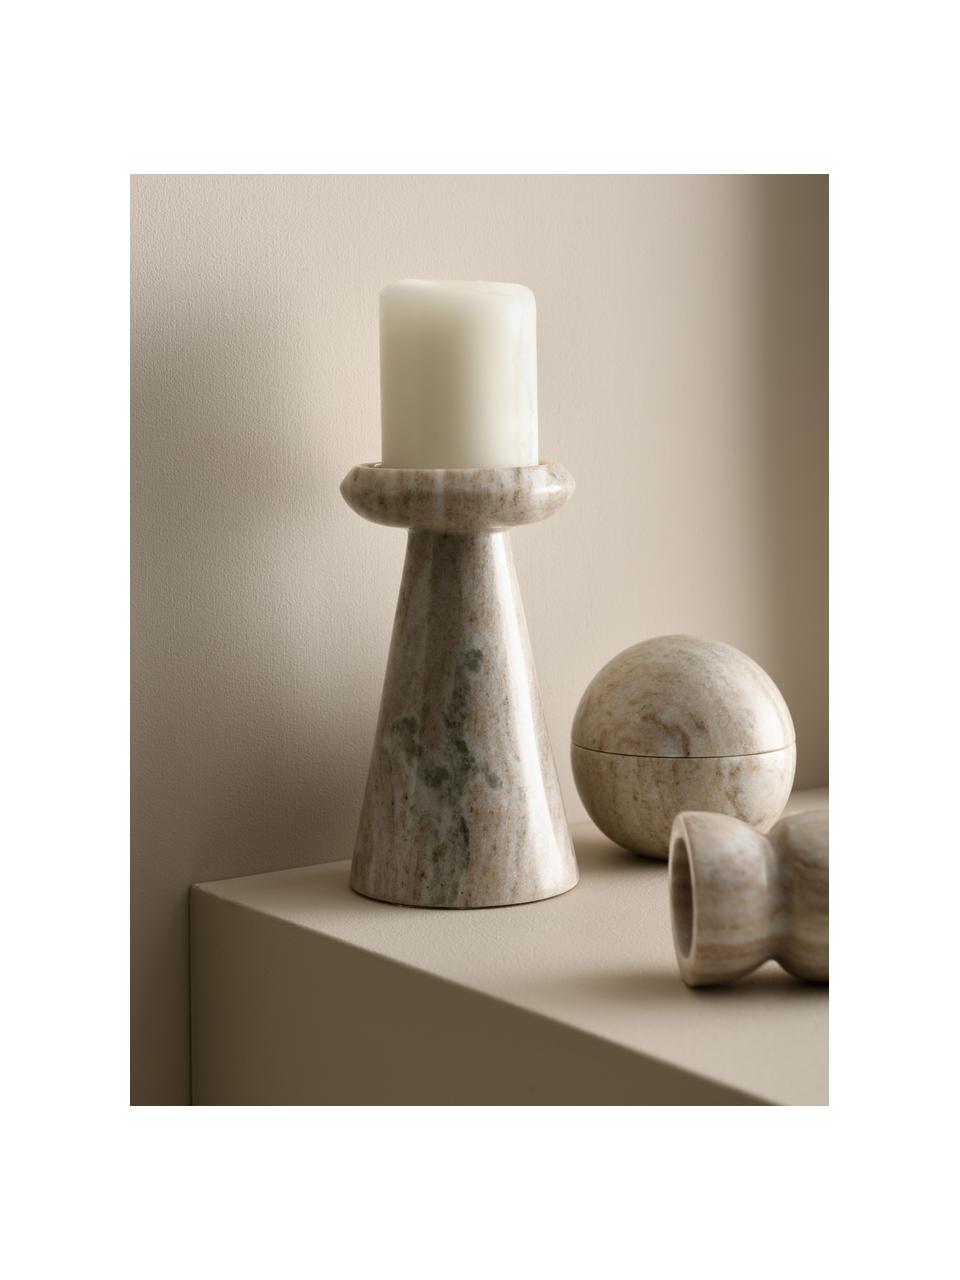 Marmor-Kerzenhalter Bea in Beige, Marmor, Beige, Ø 10 x H 18 cm